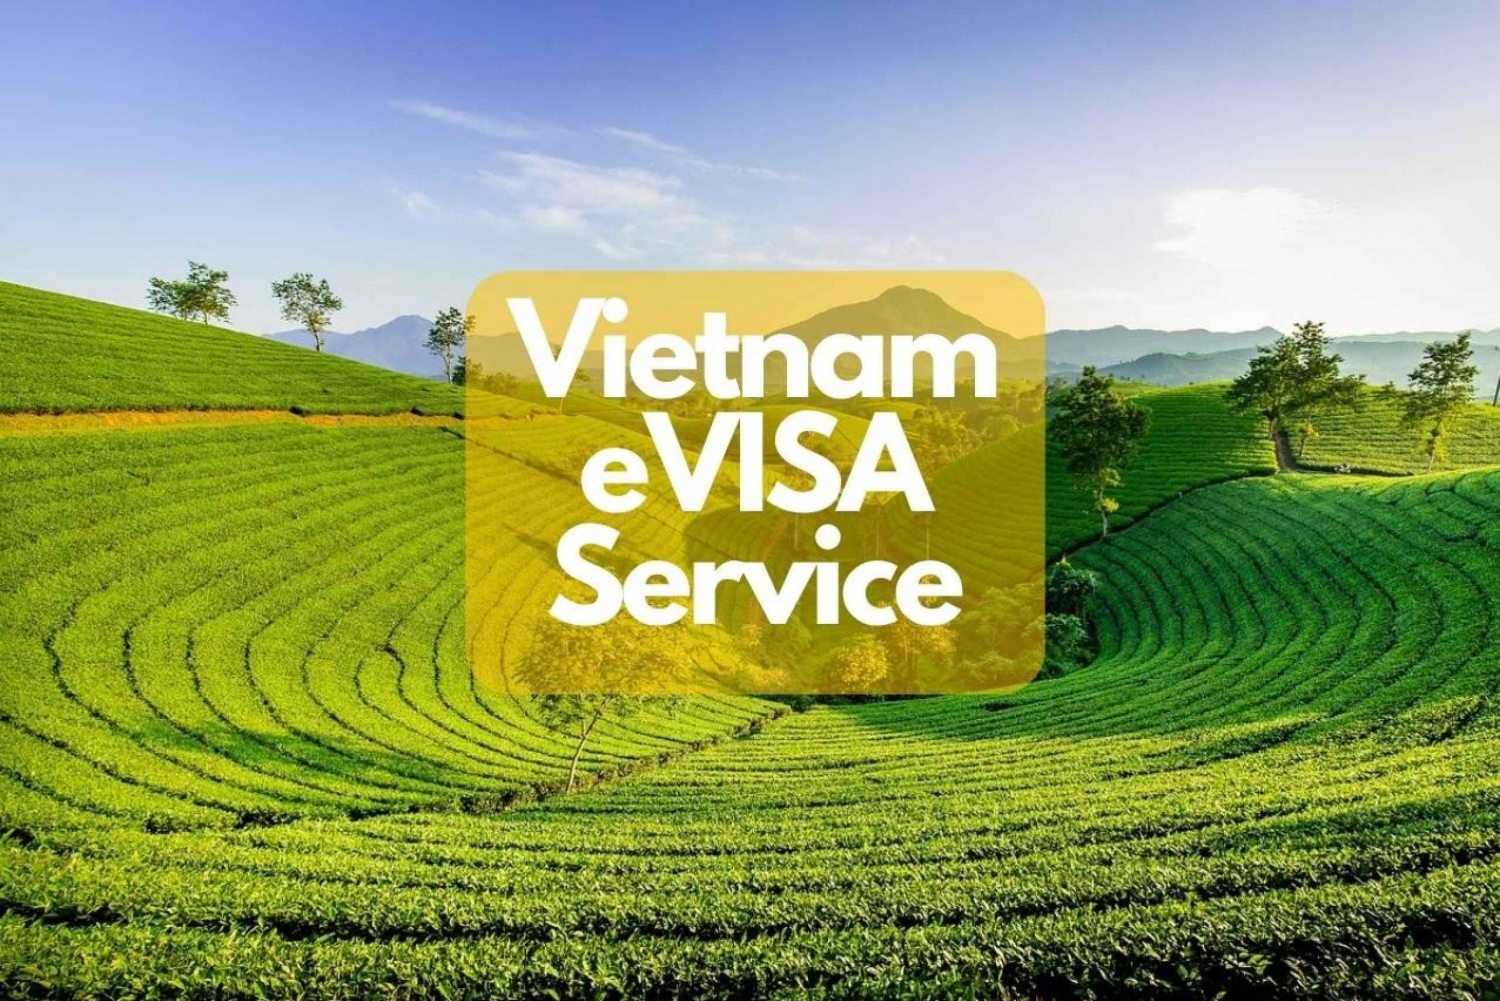 Servicio de visado electrónico de Vietnam para viajeros internacionales